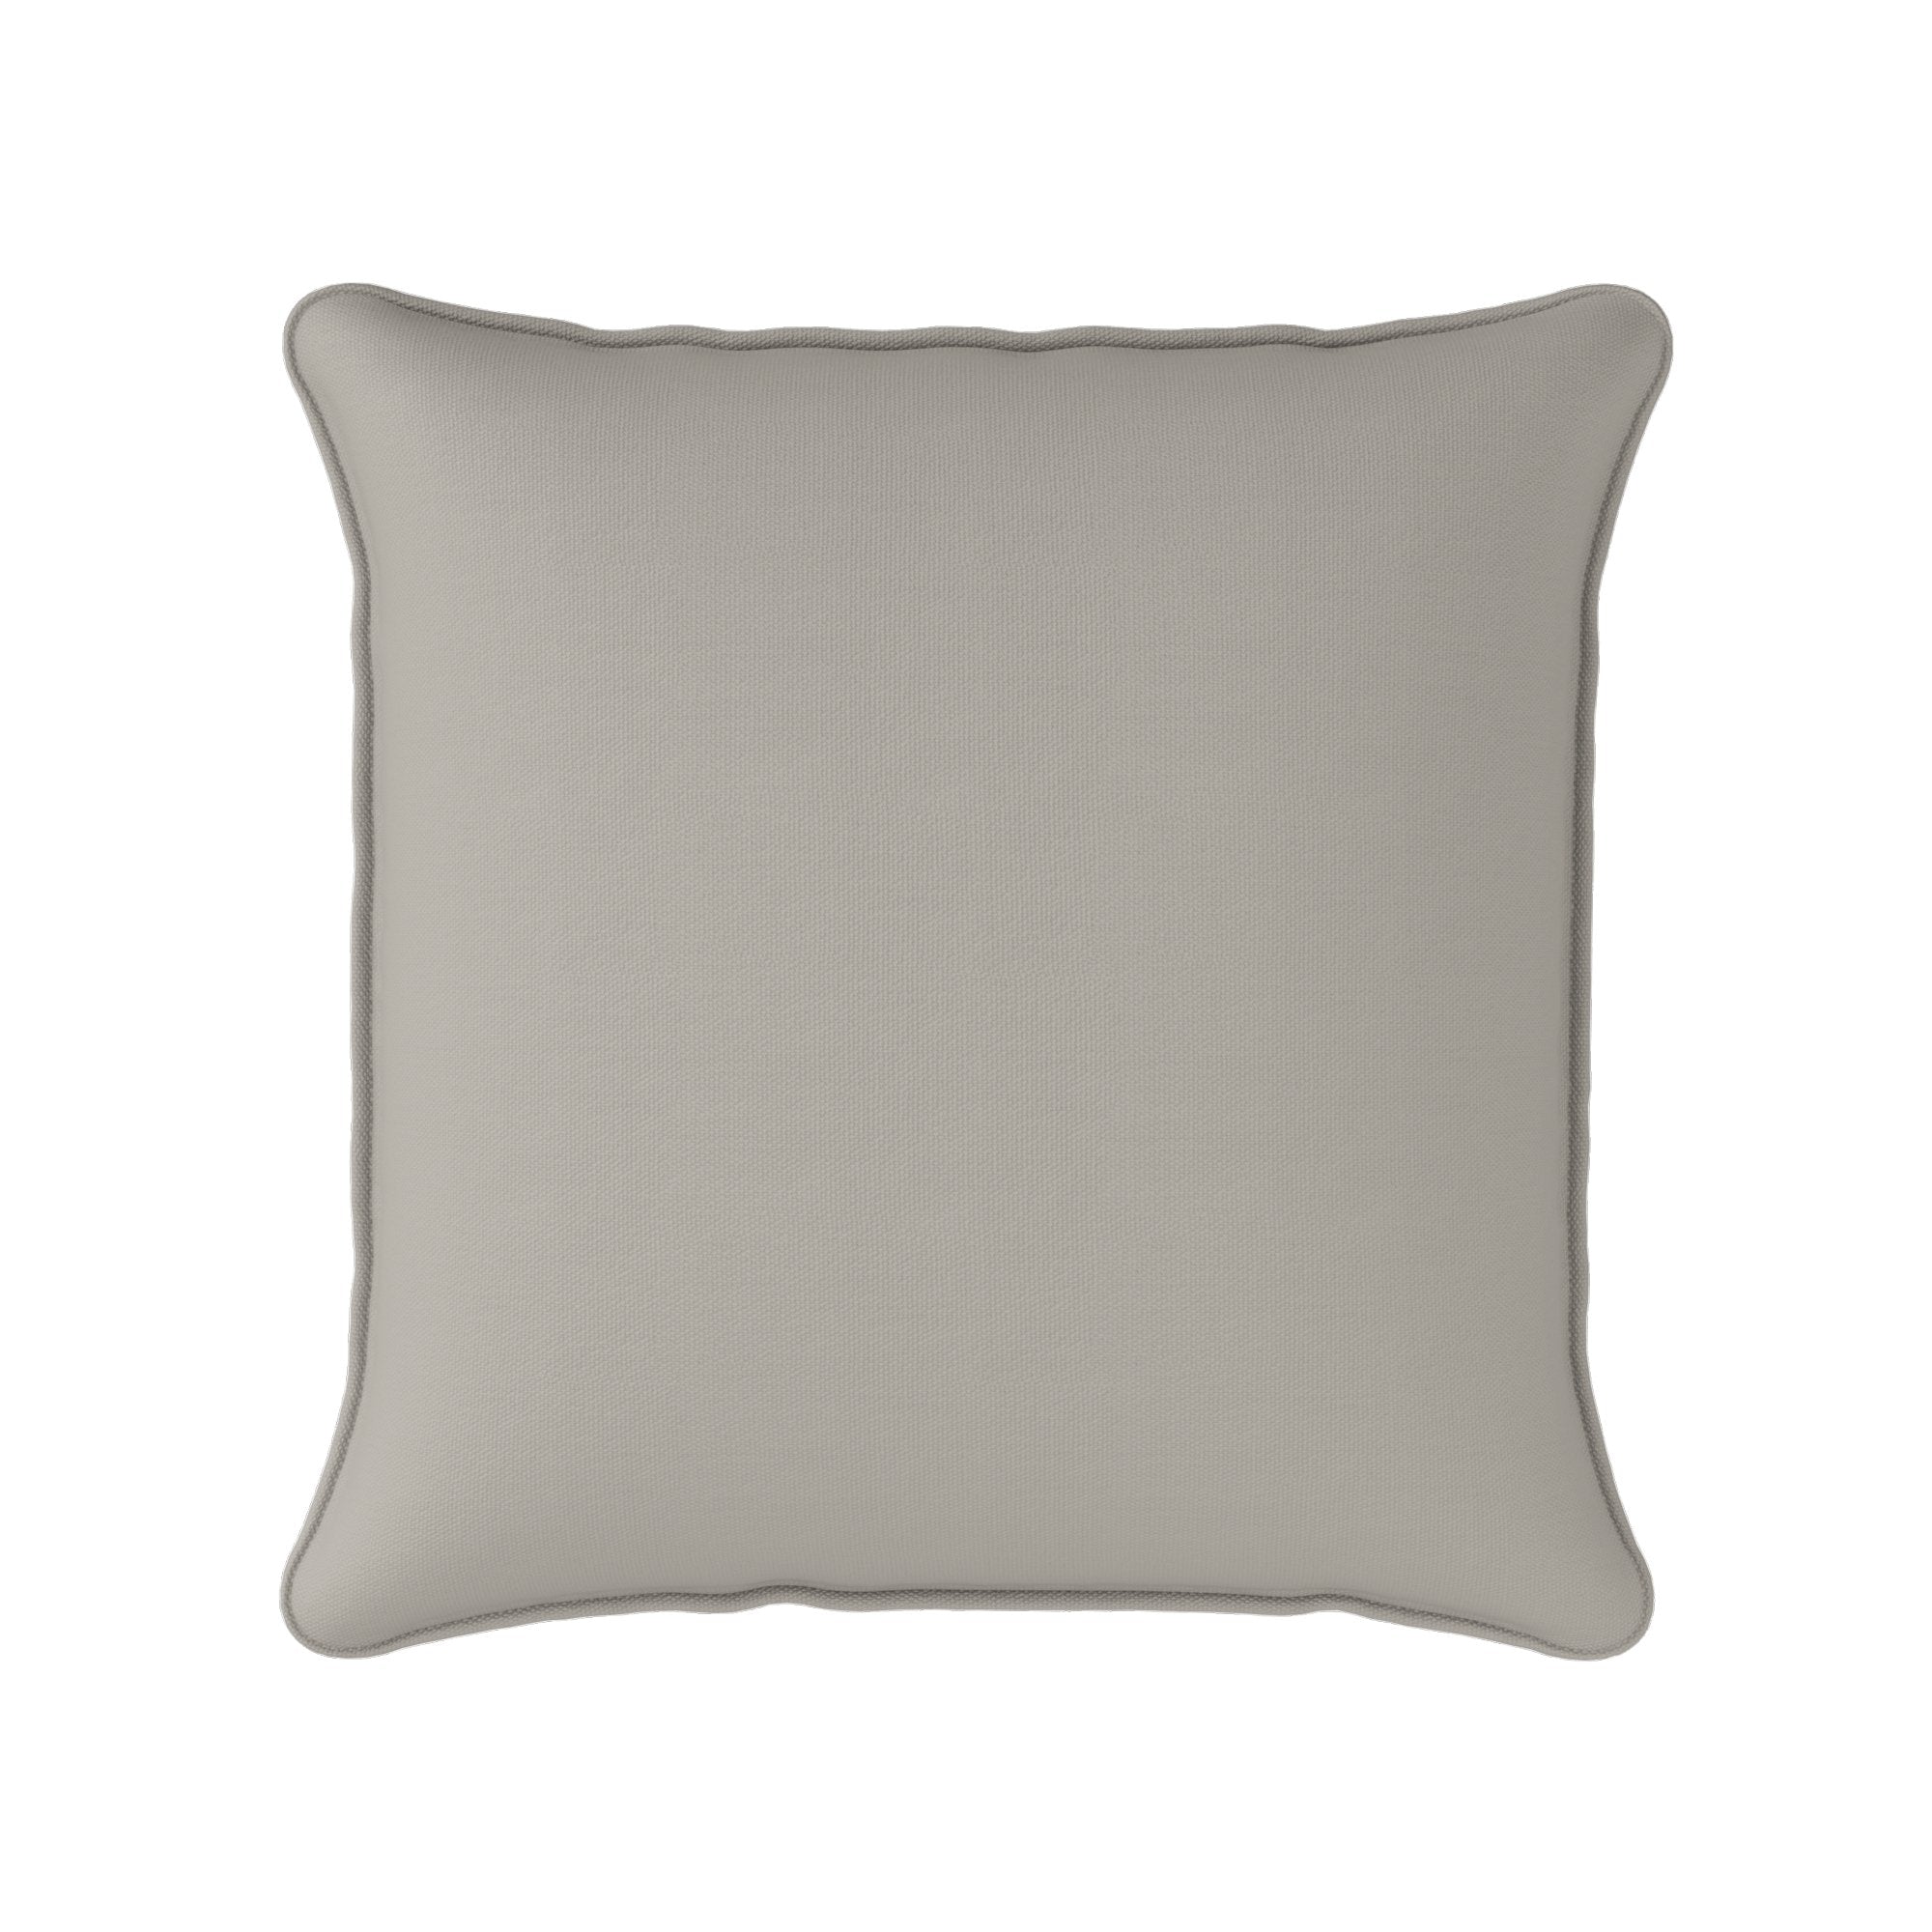 Perfectly Plain Cushion - Neutrals - Hydrangea Lane Home